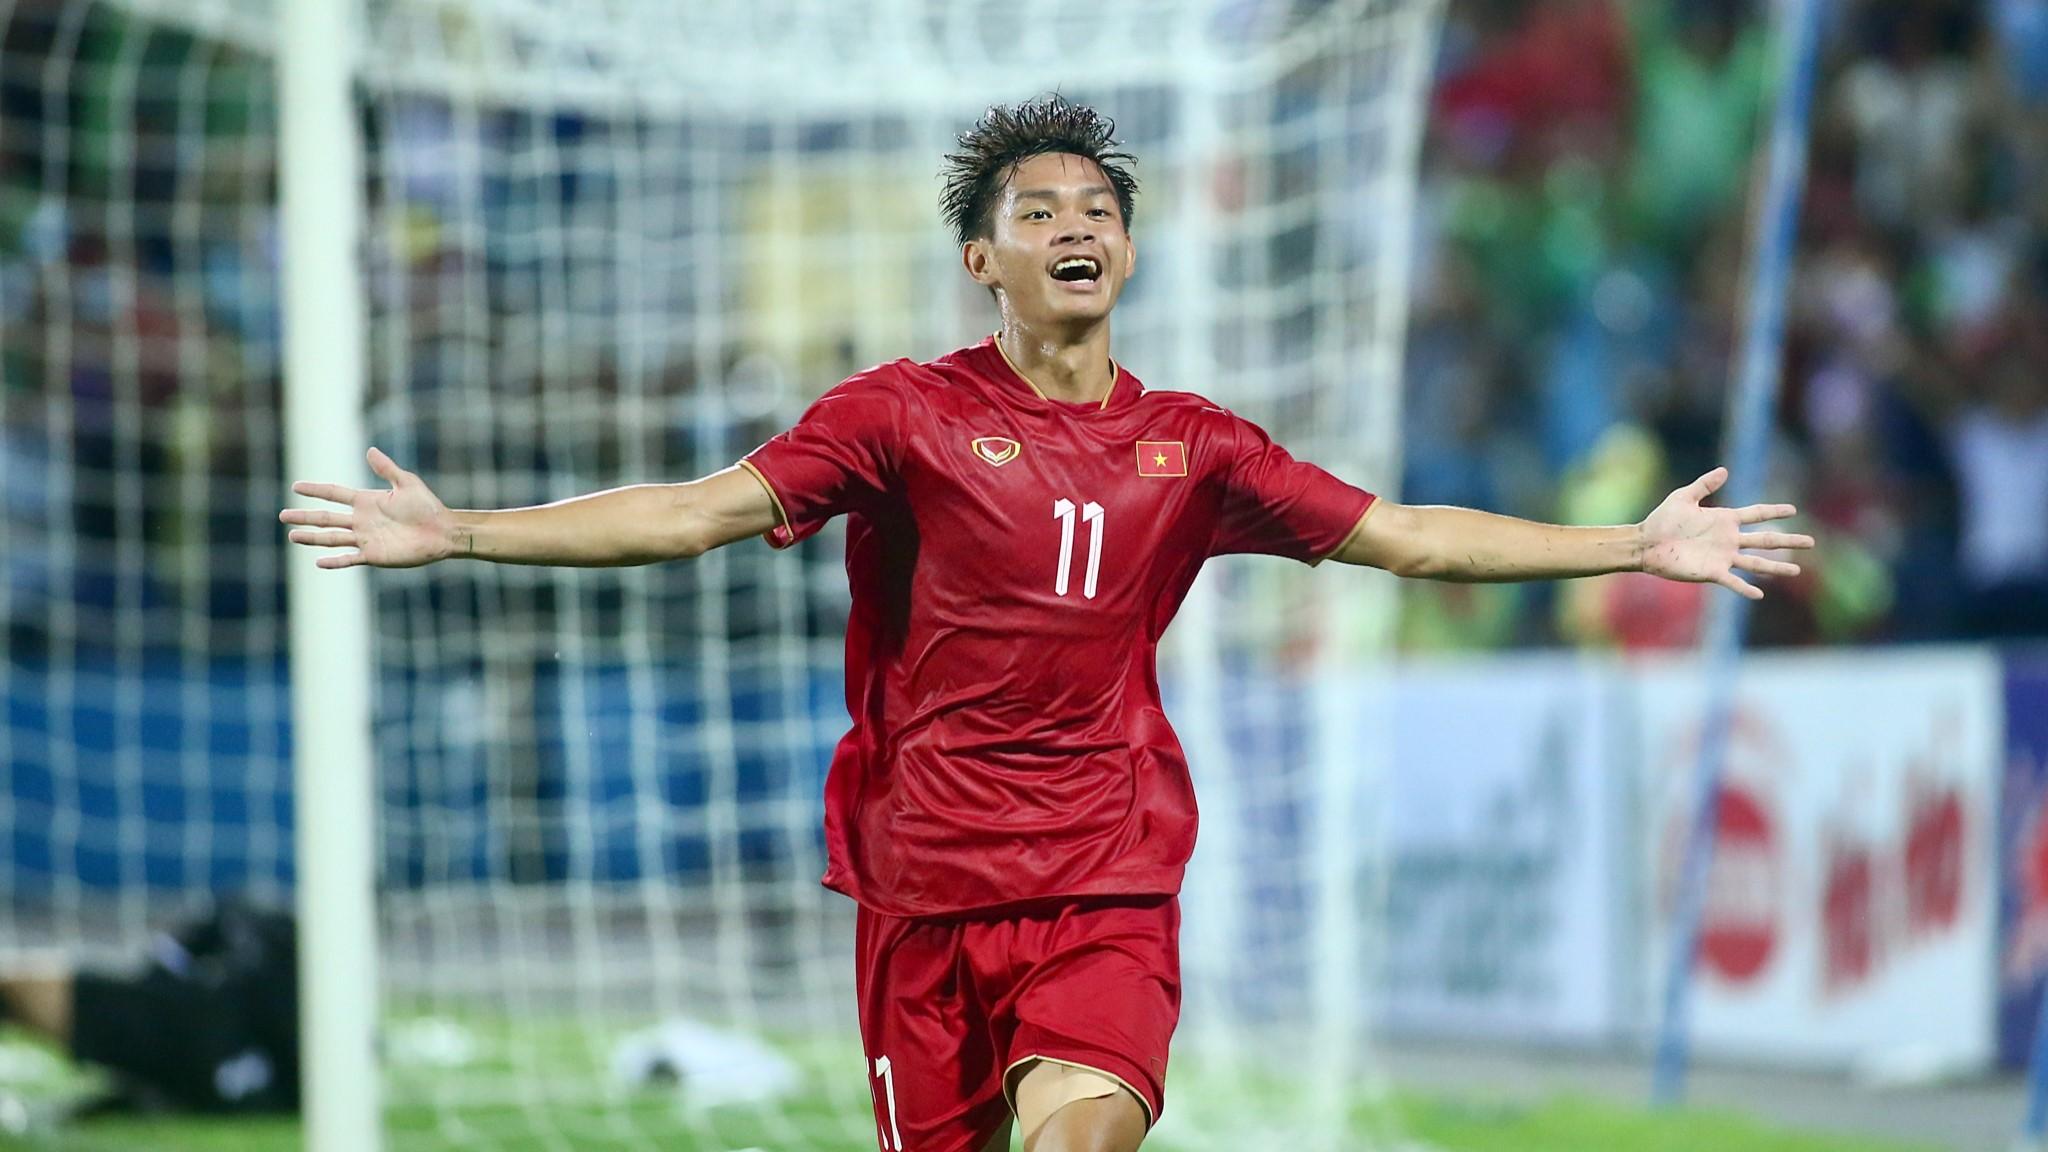 Sự nghiệp của Bùi Vĩ Hào bắt đầu từ khi anh tham gia thi đấu cho câu lạc bộ trẻ ở An Giang và đội tuyển quốc gia Việt Nam